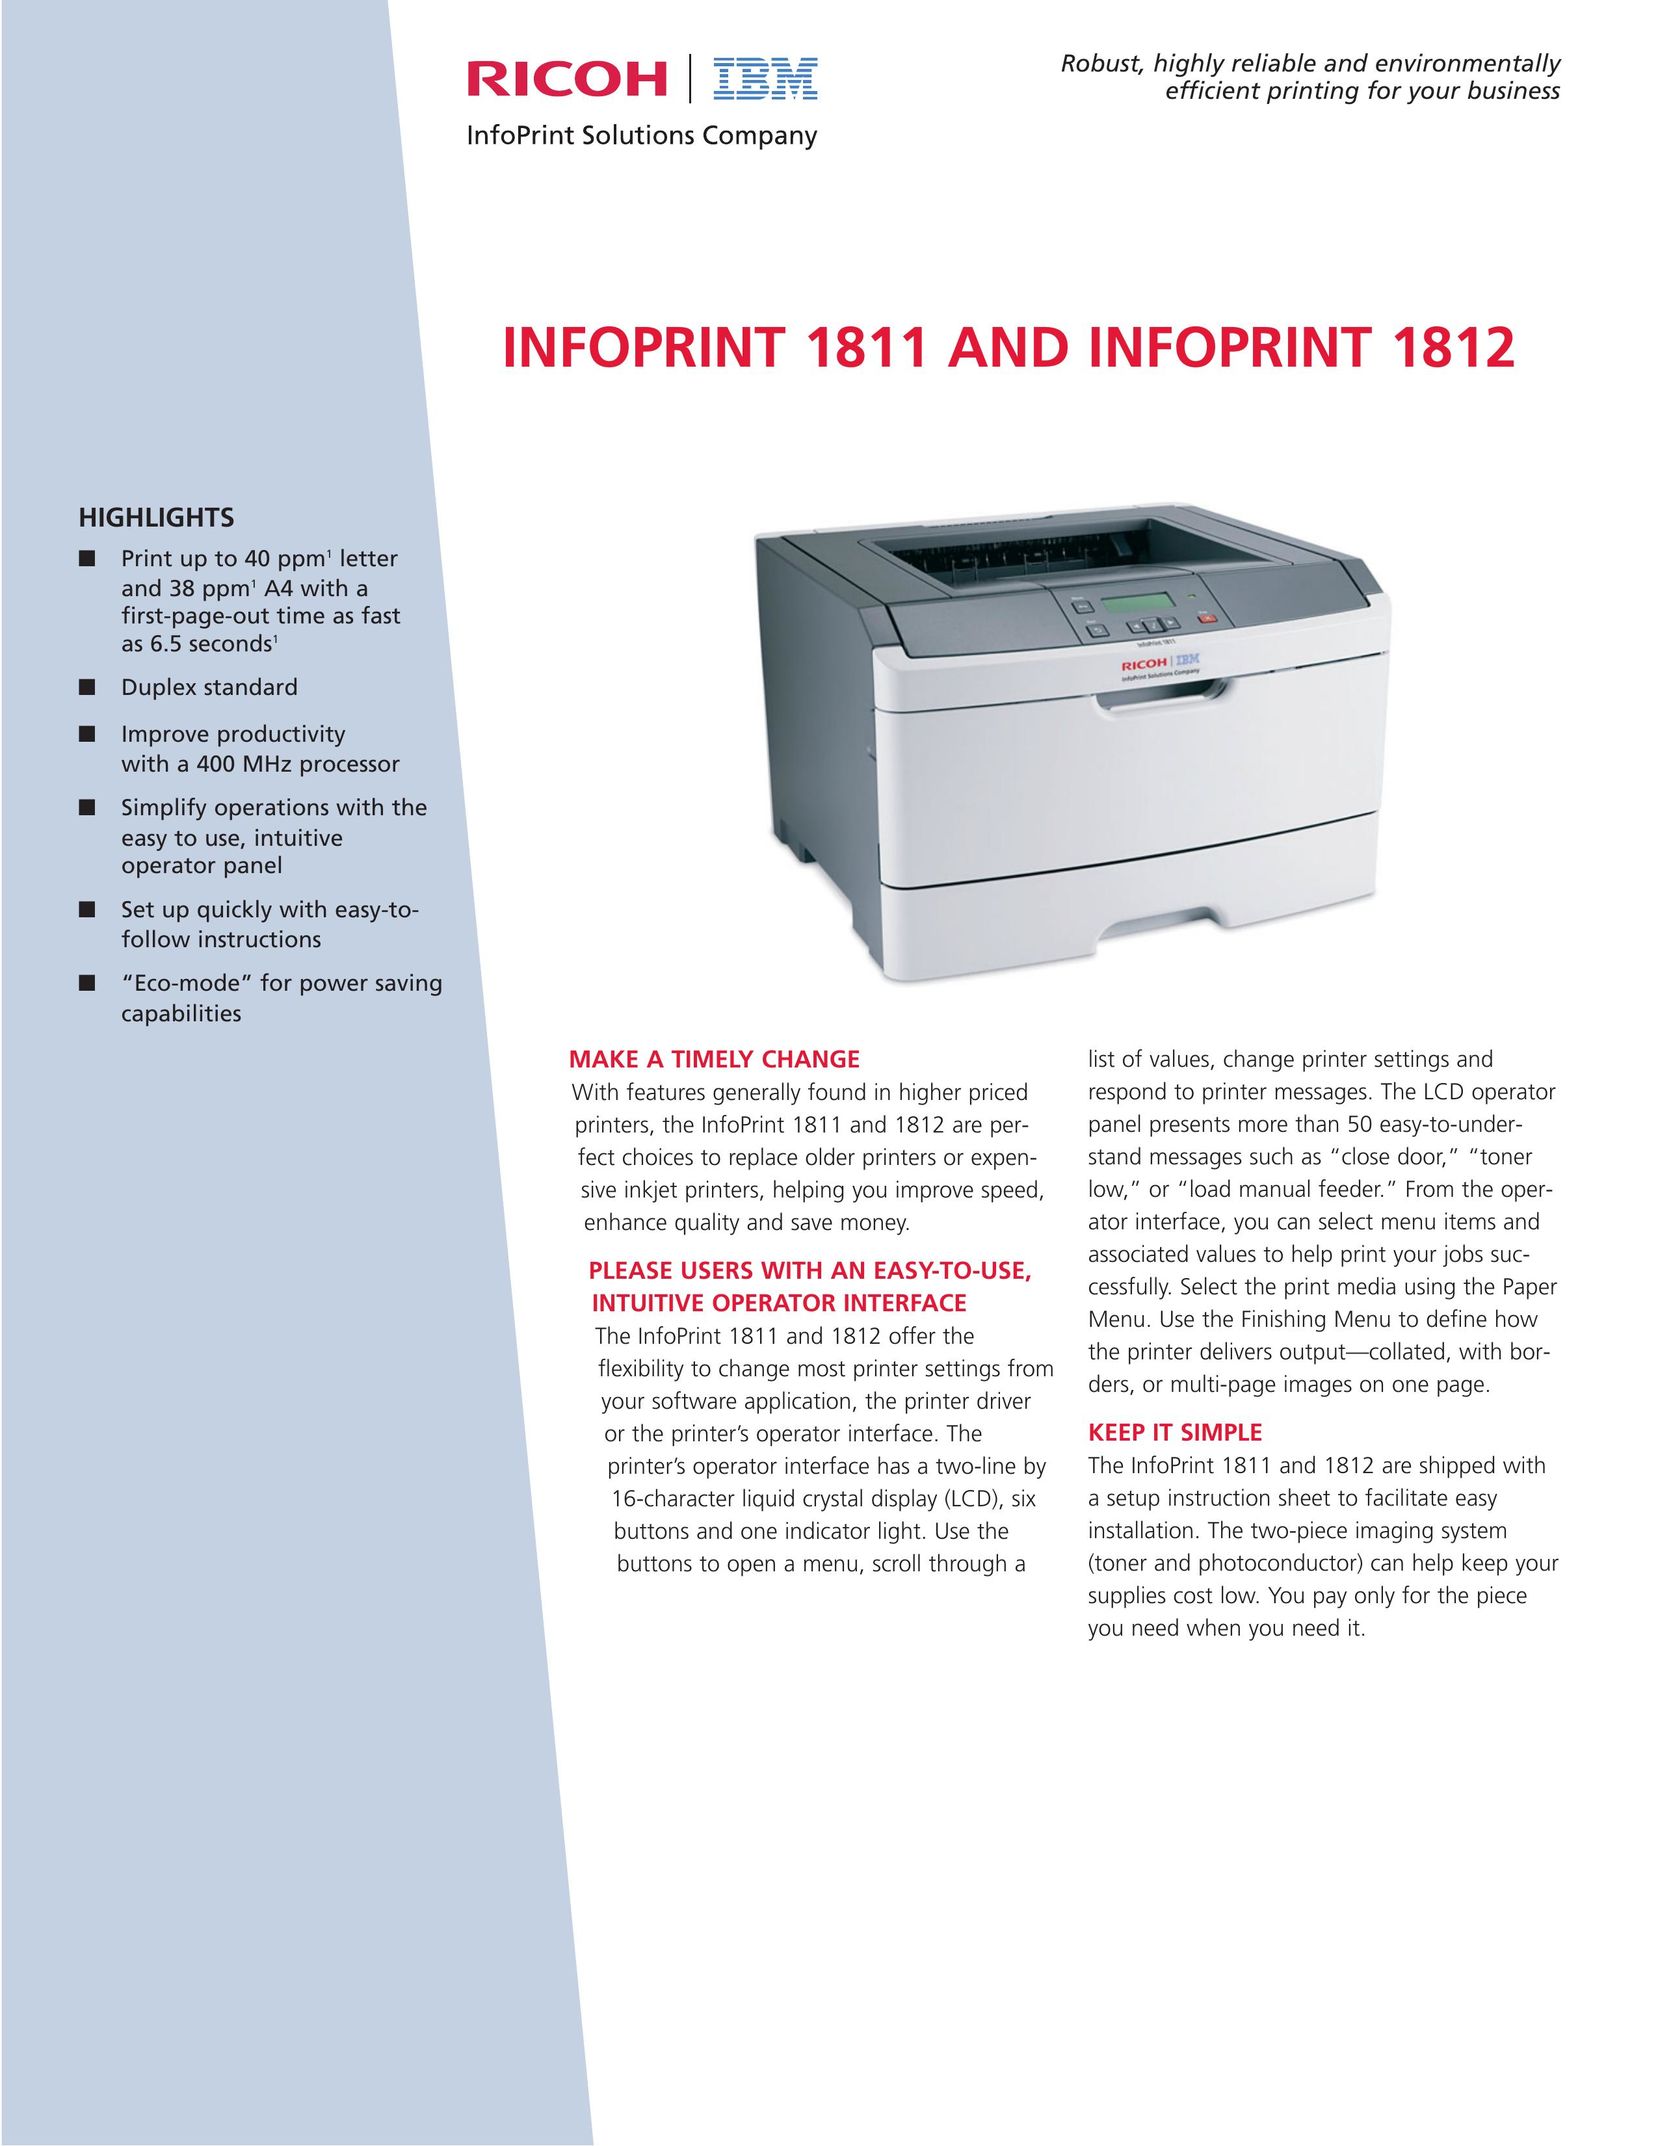 Ricoh 1812 Printer User Manual